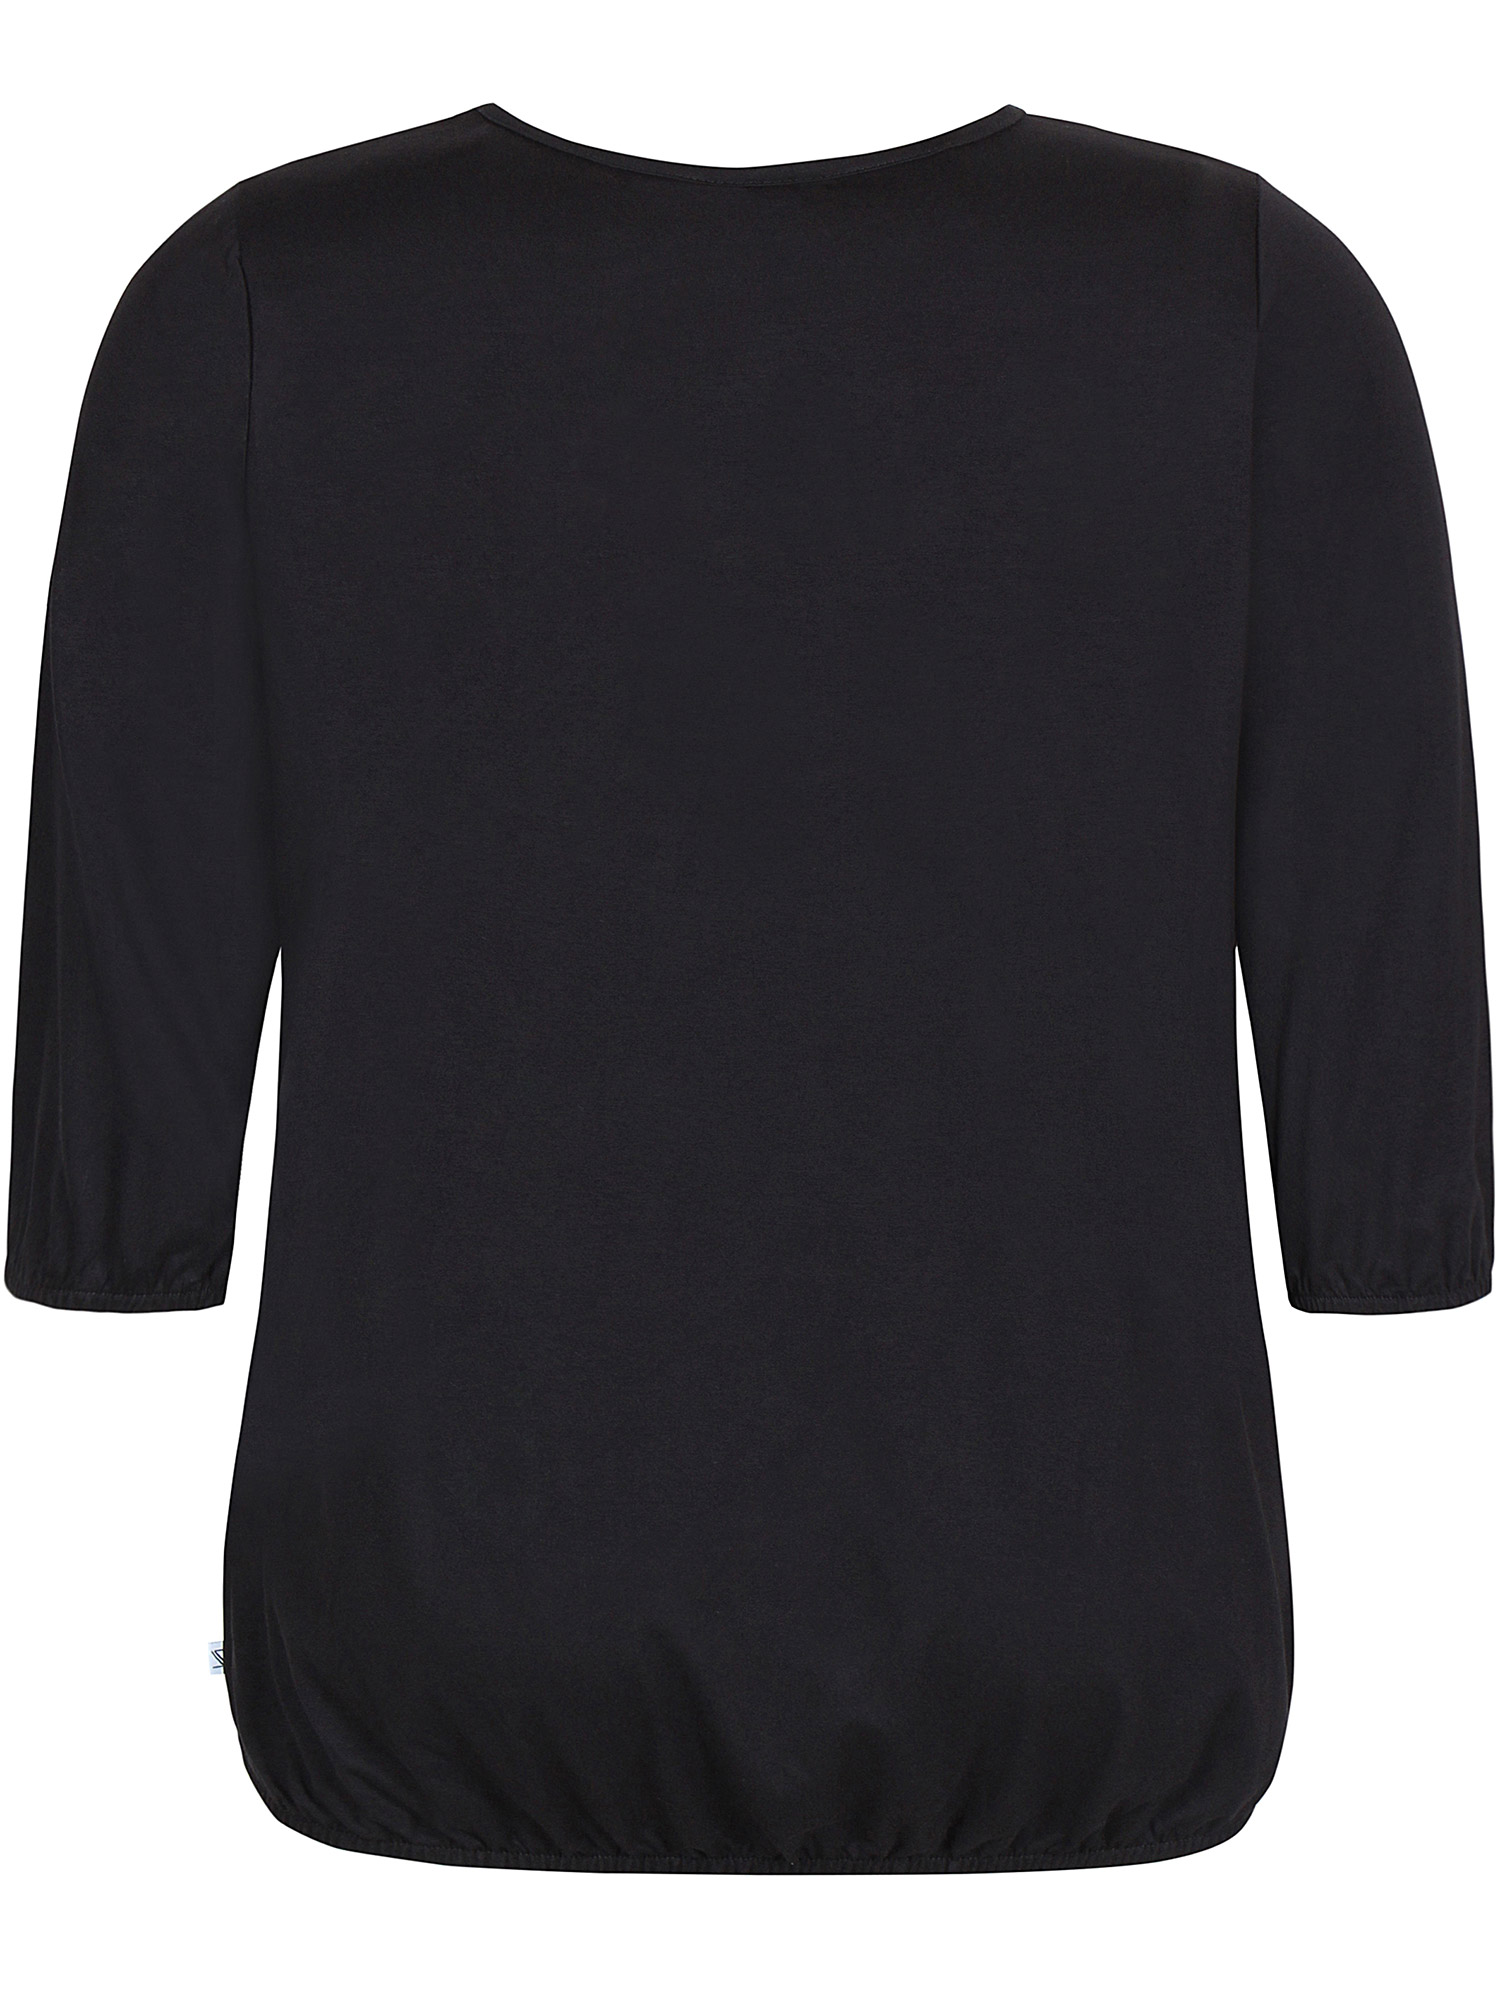 GIRO - Sort jersey bluse med elastikkant fra Zhenzi